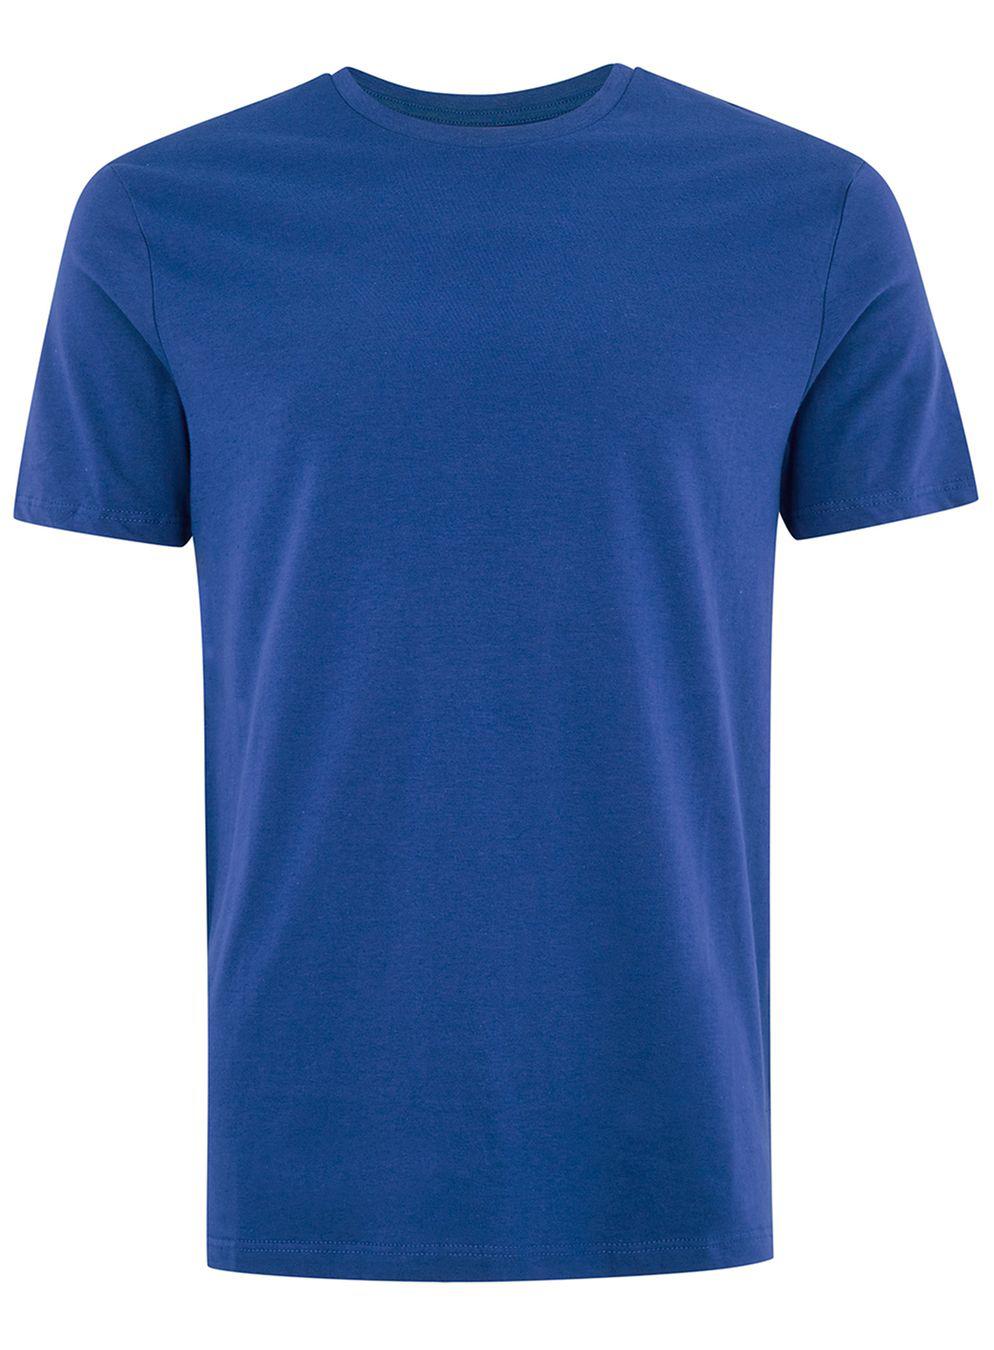 Lyst - Topman Cobalt Blue Slim T-shirt in Blue for Men